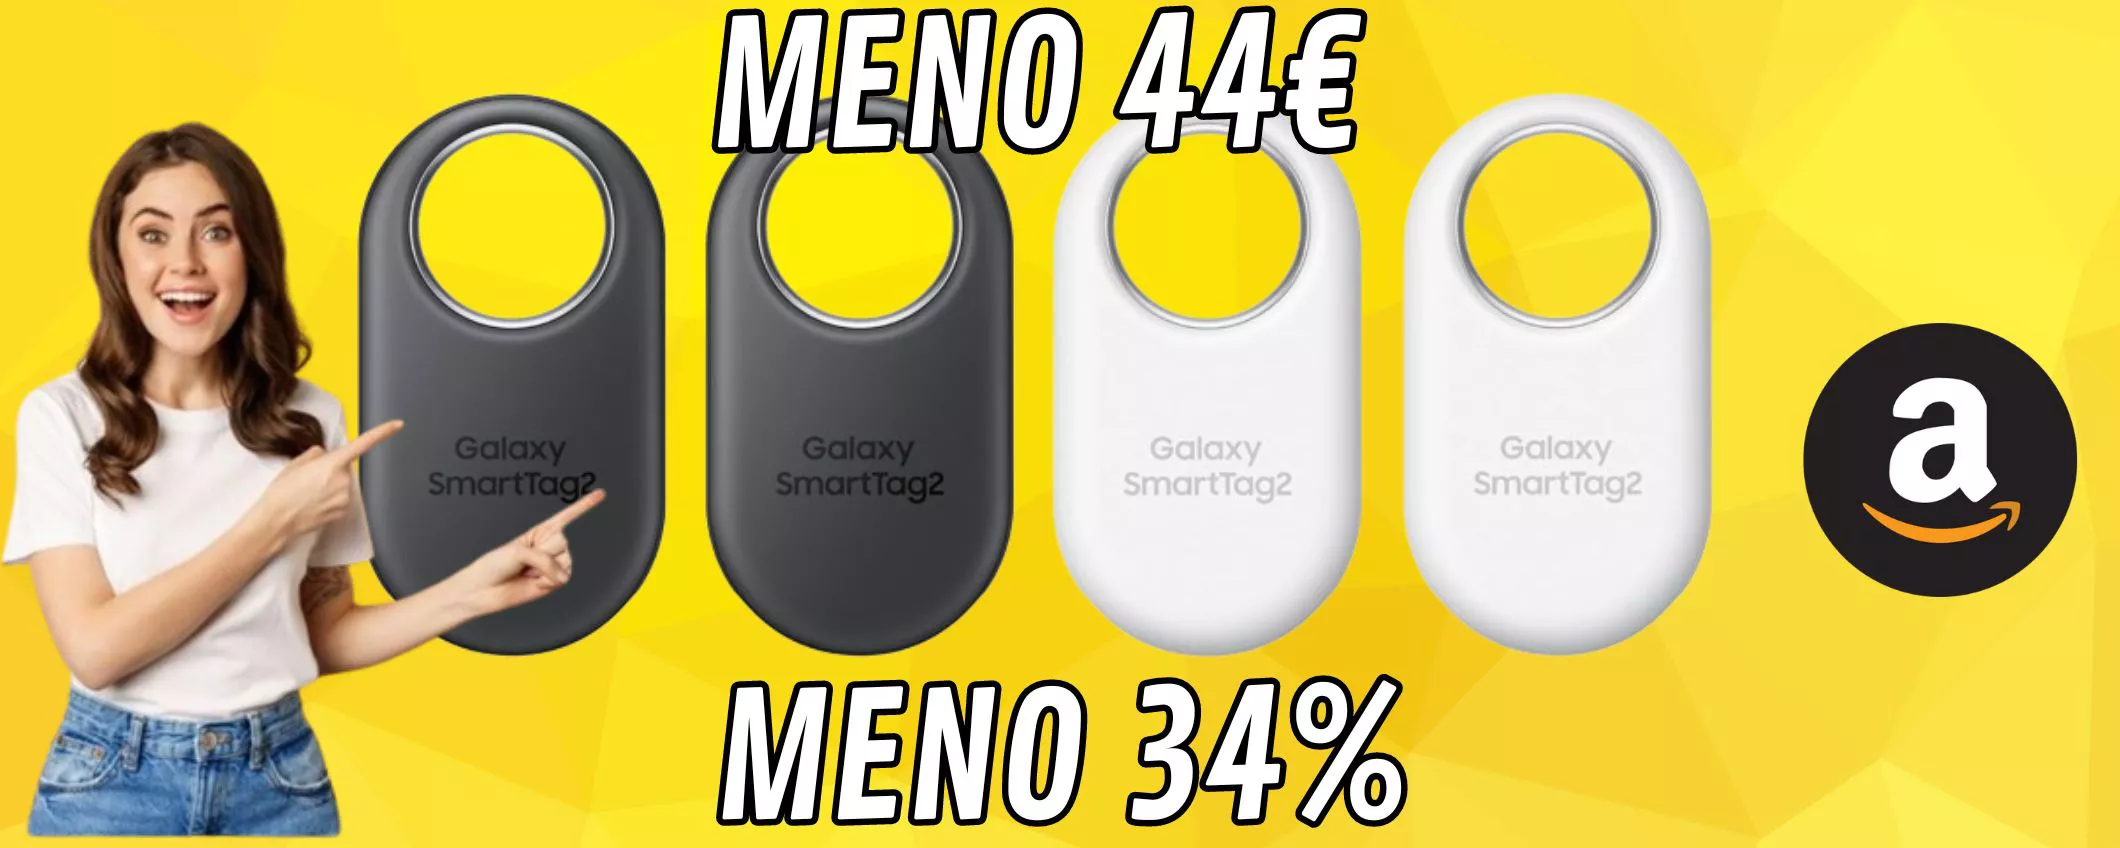 Samsung Galaxy SmartTag2, il bundle da 4 è scontatissimo MENO 34 PER CENTO!